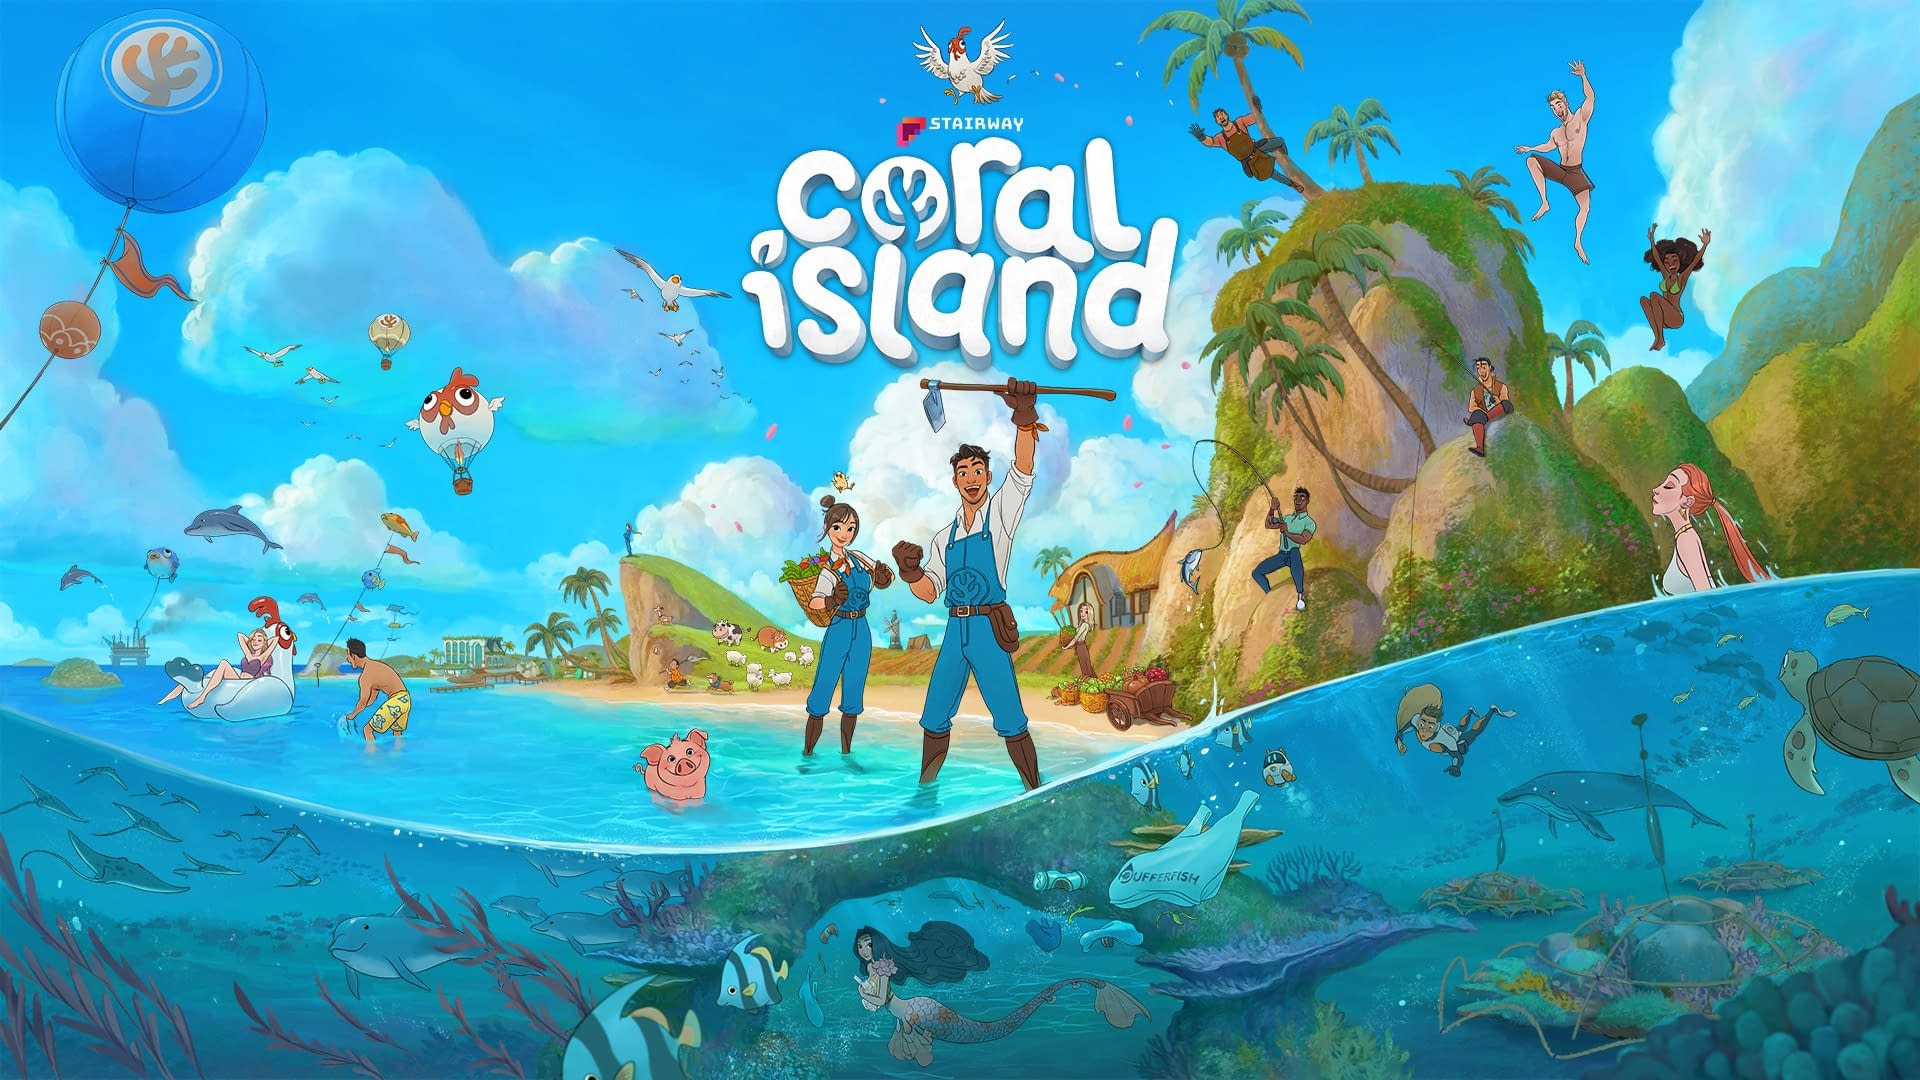 Coral Island Enters Steam Weekly Bestseller List